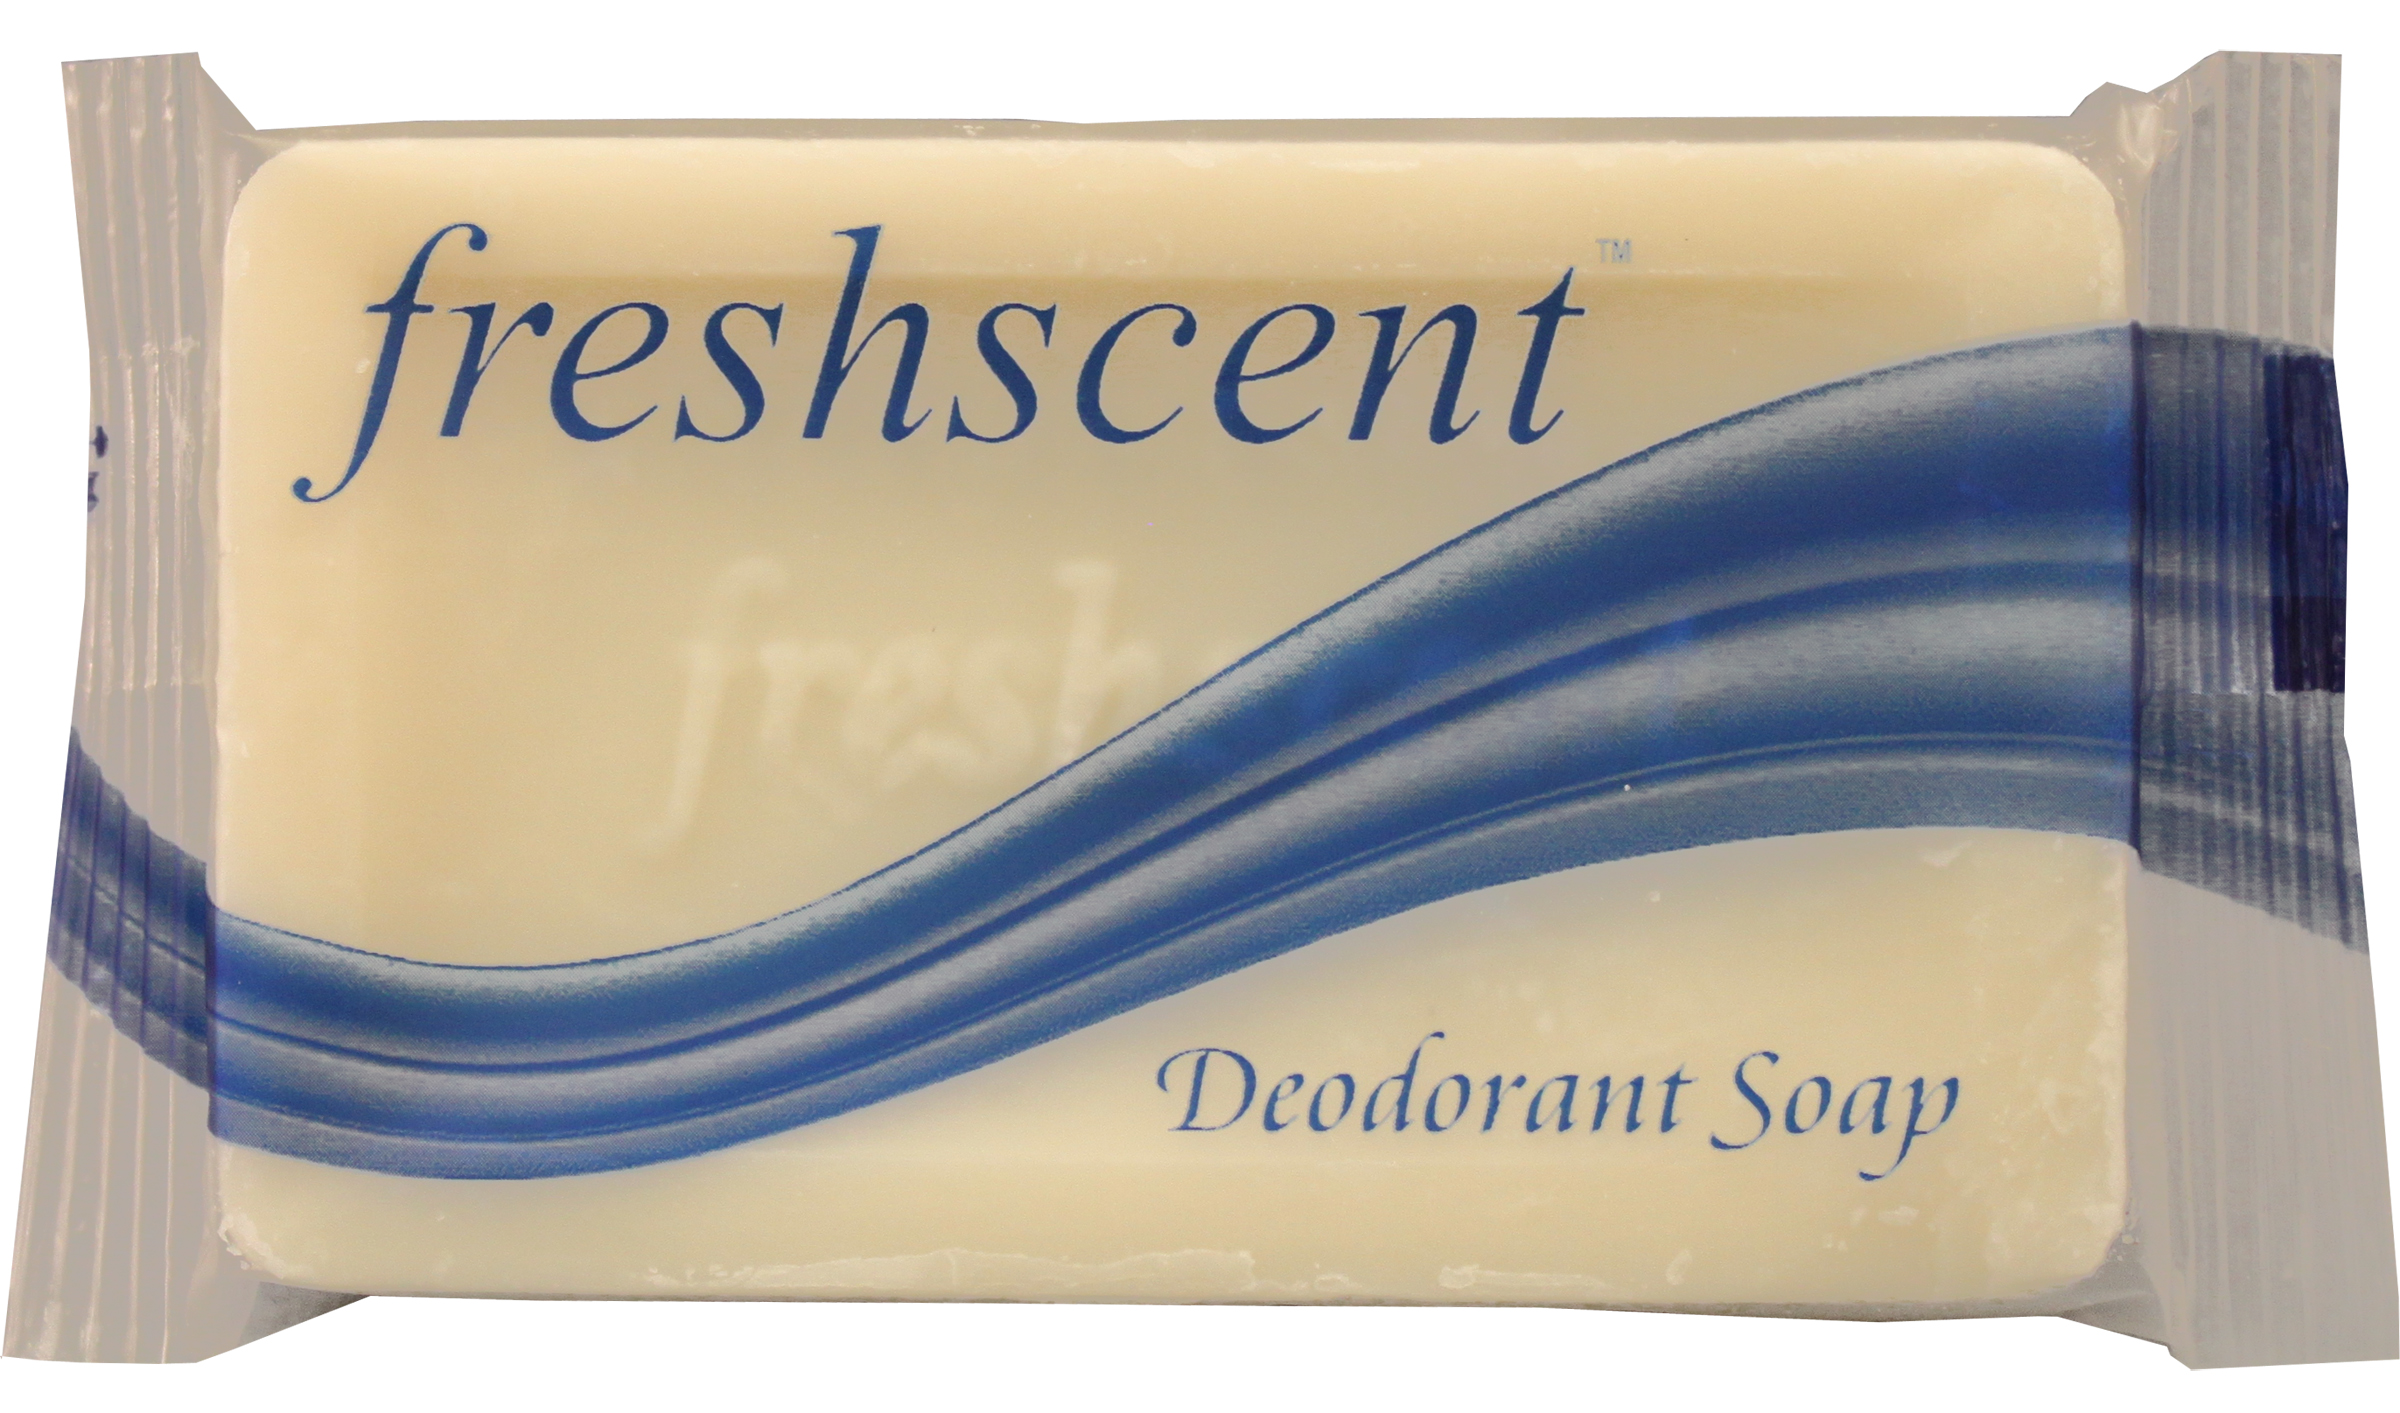 Freshscent #1 (.85 oz.) Deodorant Soap